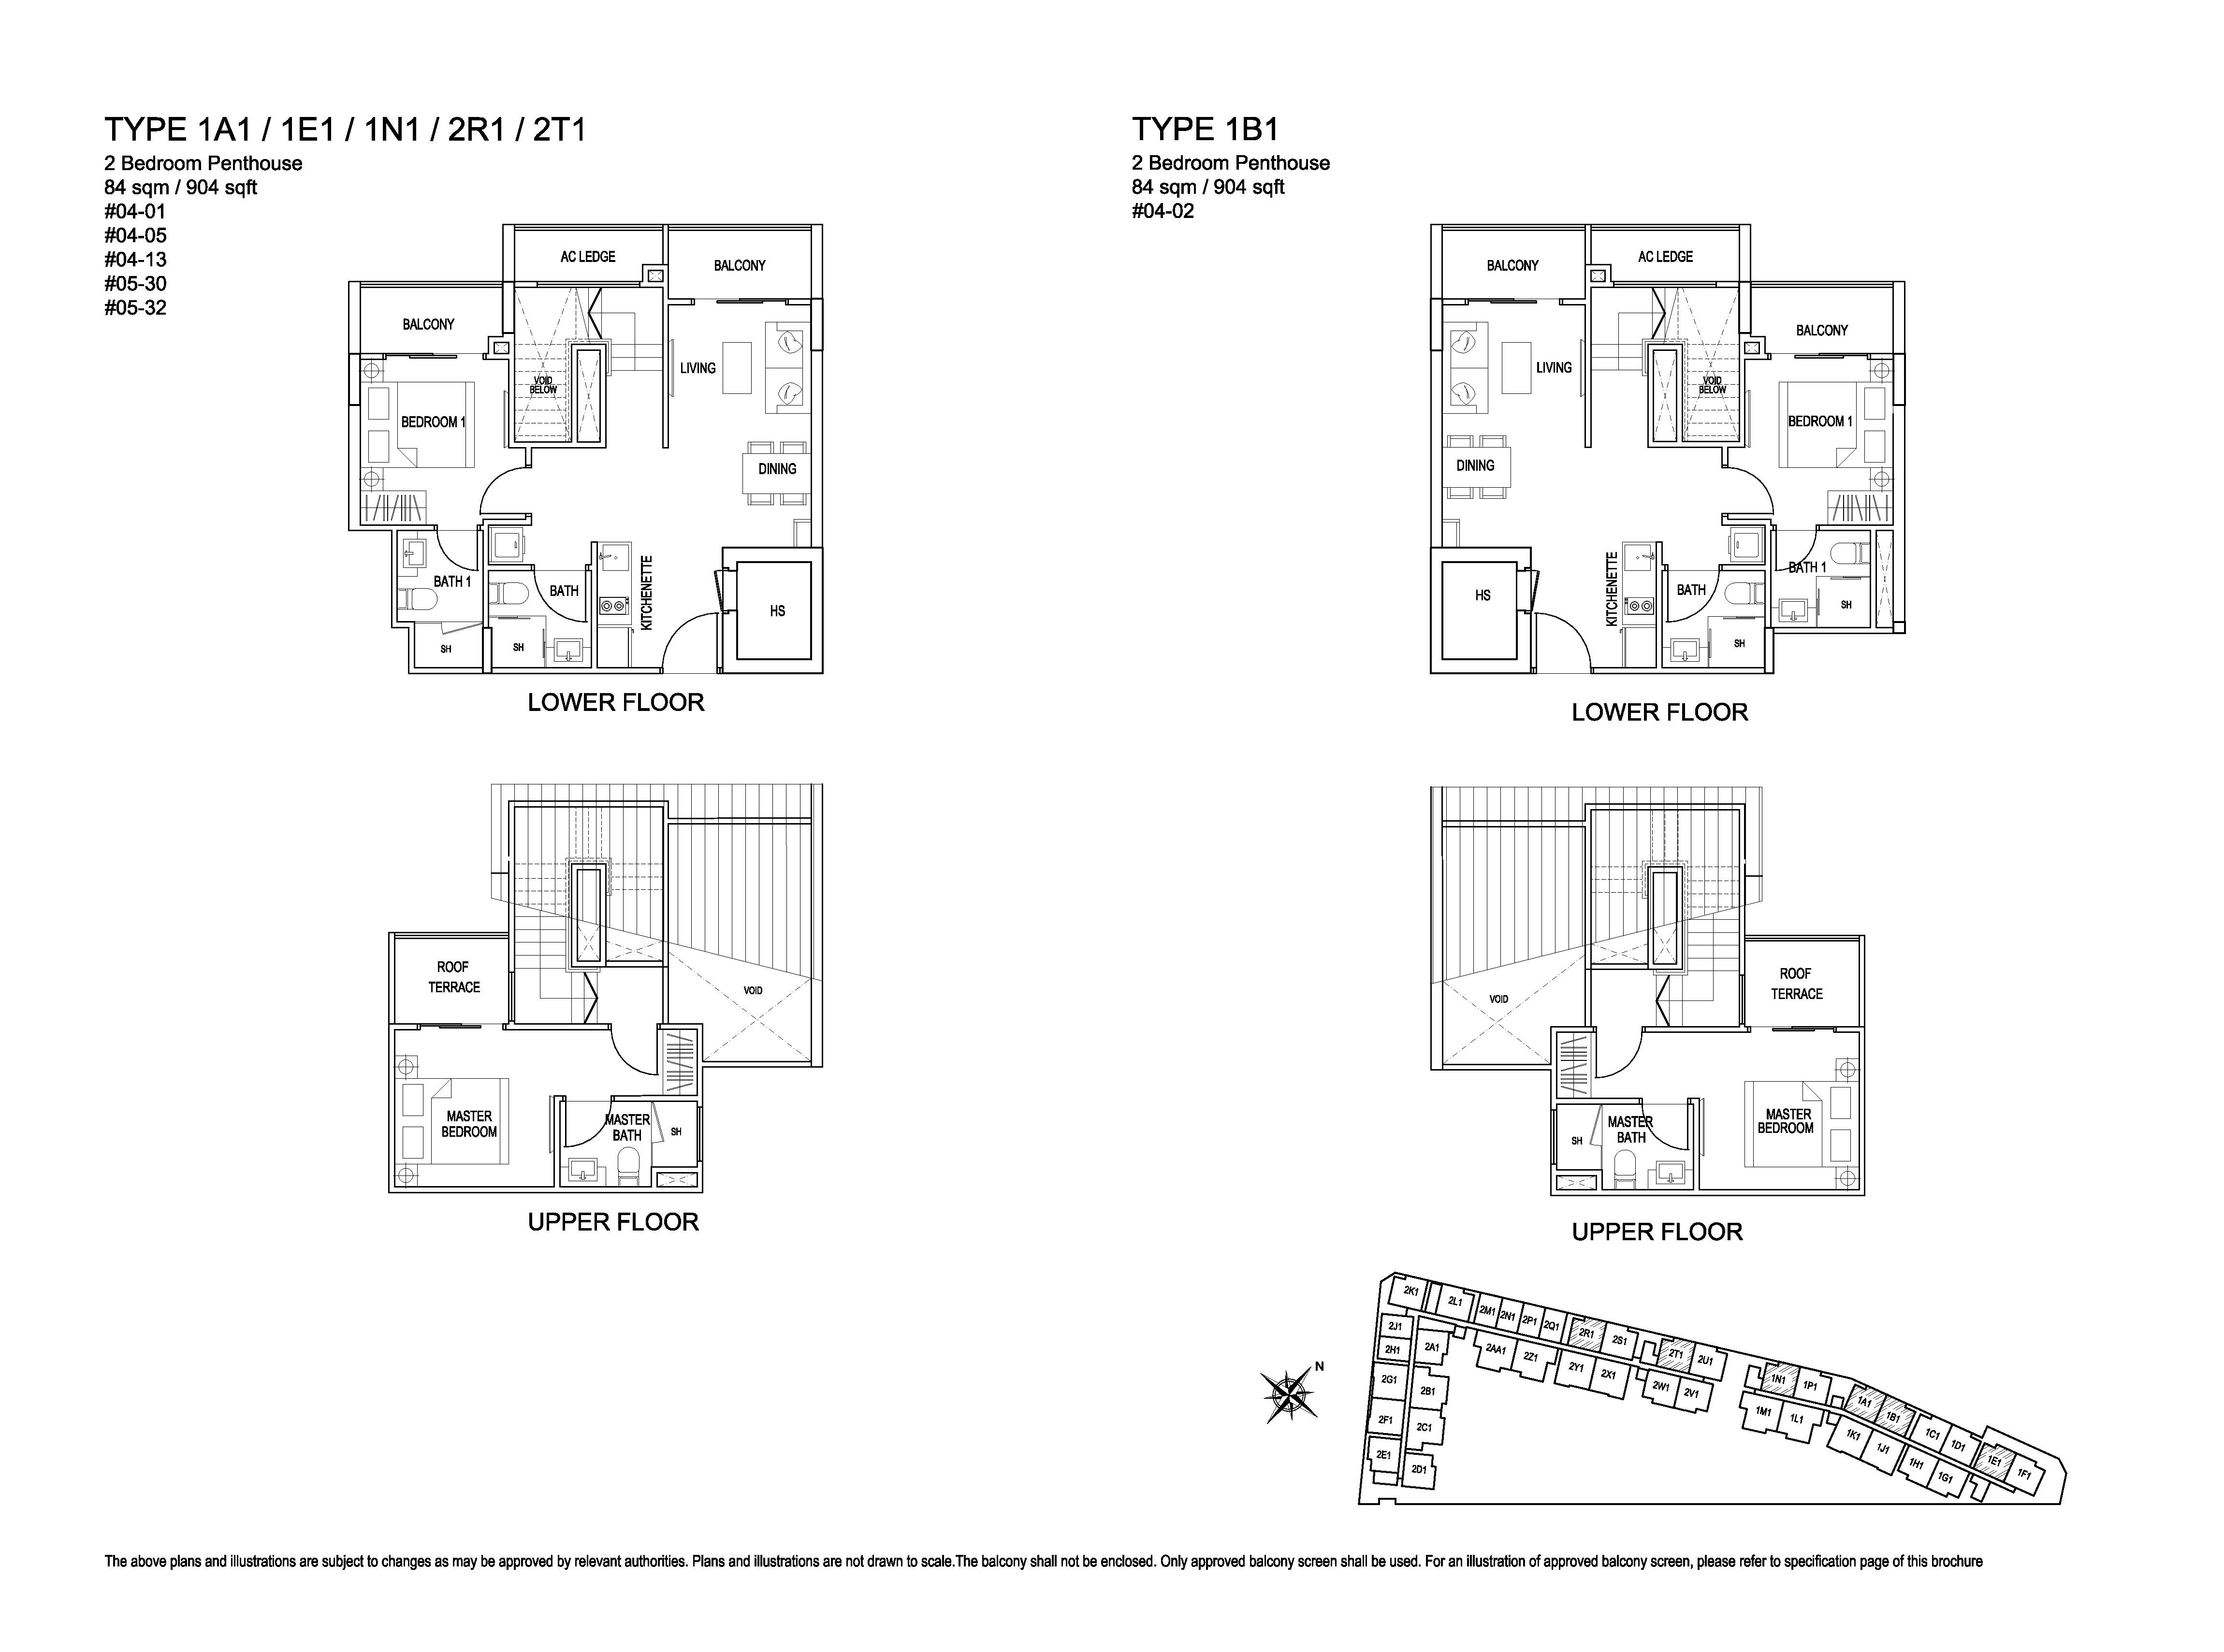 Kensington Square 2 Bedroom Penthouse Floor Plans Type 1A1, 1E1, 1N1, 2R1, 2T1, 1B1